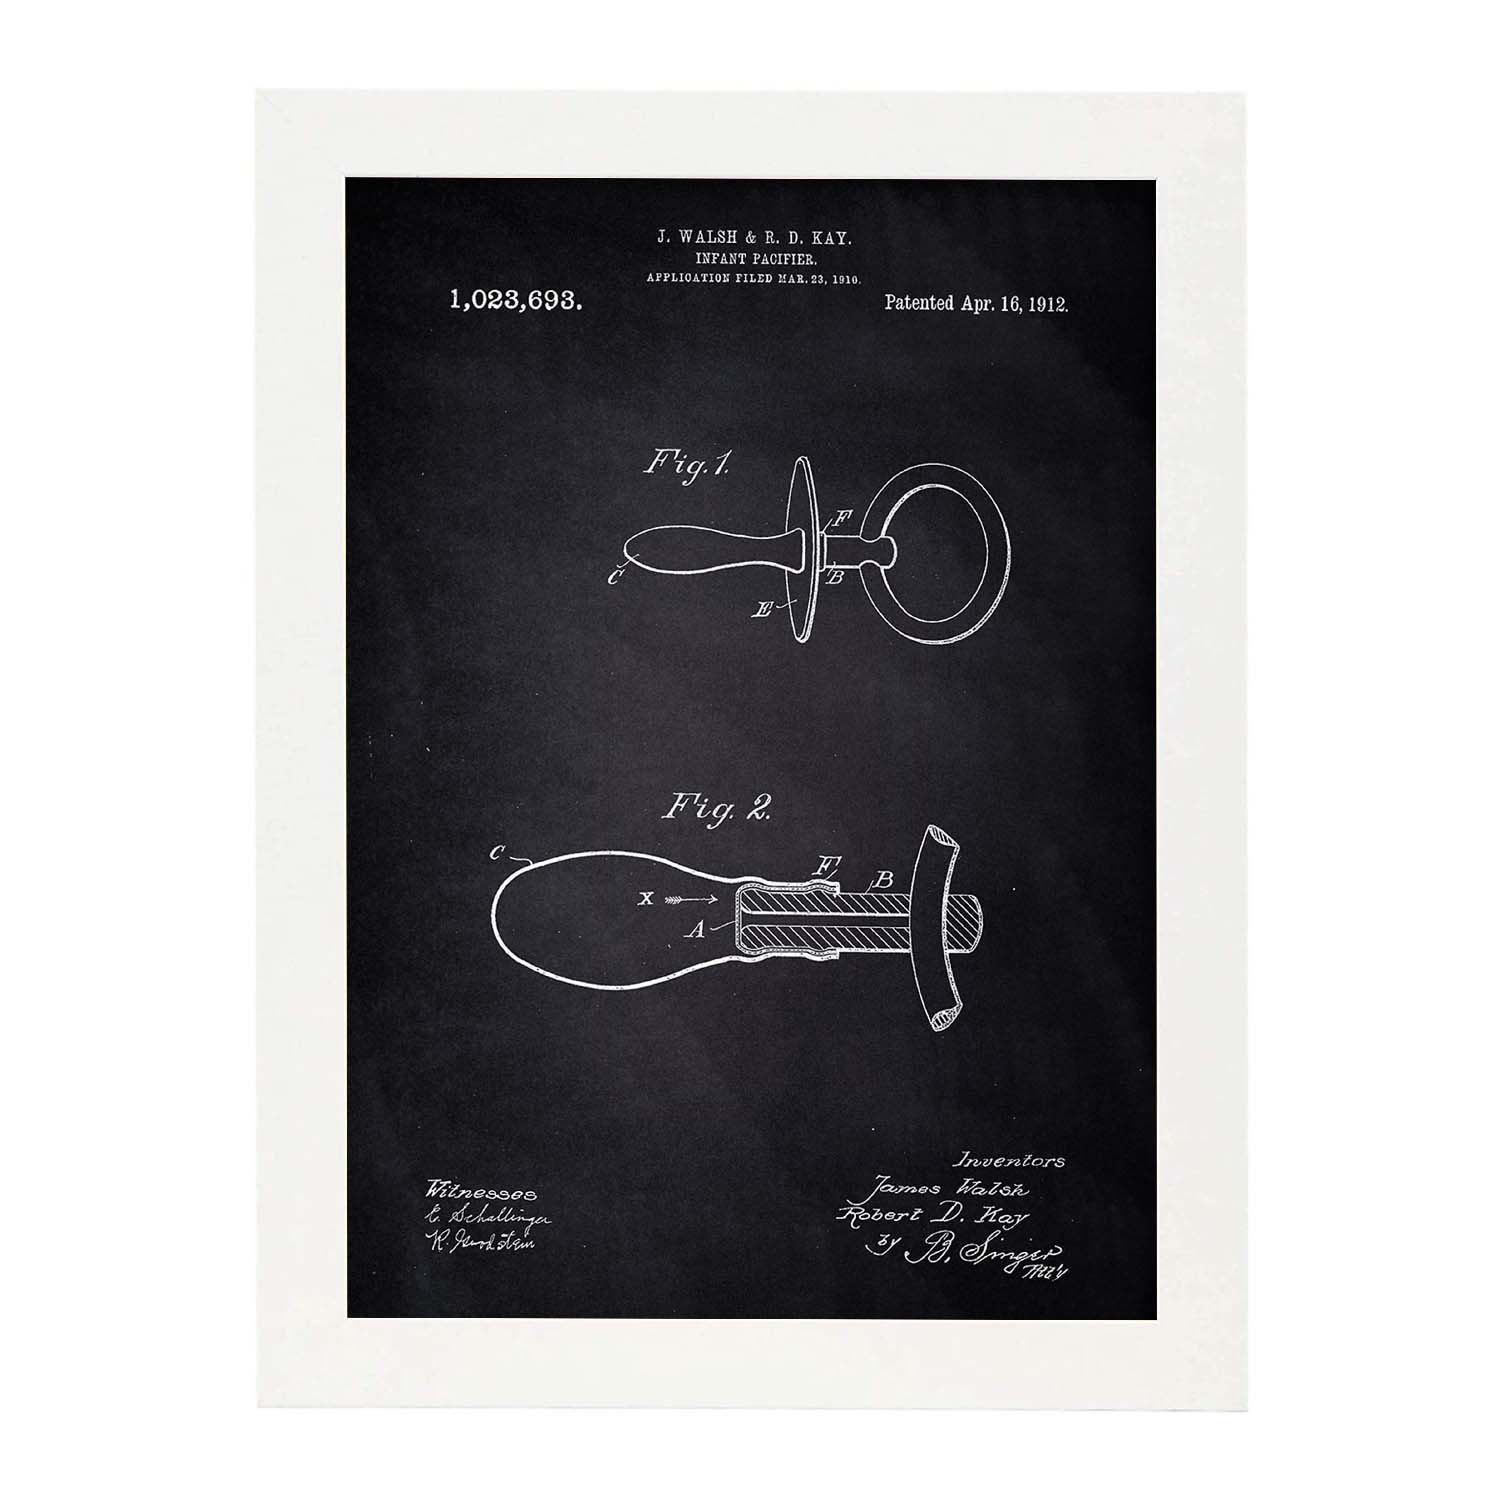 Poster con patente de Chupete 2. Lámina con diseño de patente antigua-Artwork-Nacnic-A4-Marco Blanco-Nacnic Estudio SL